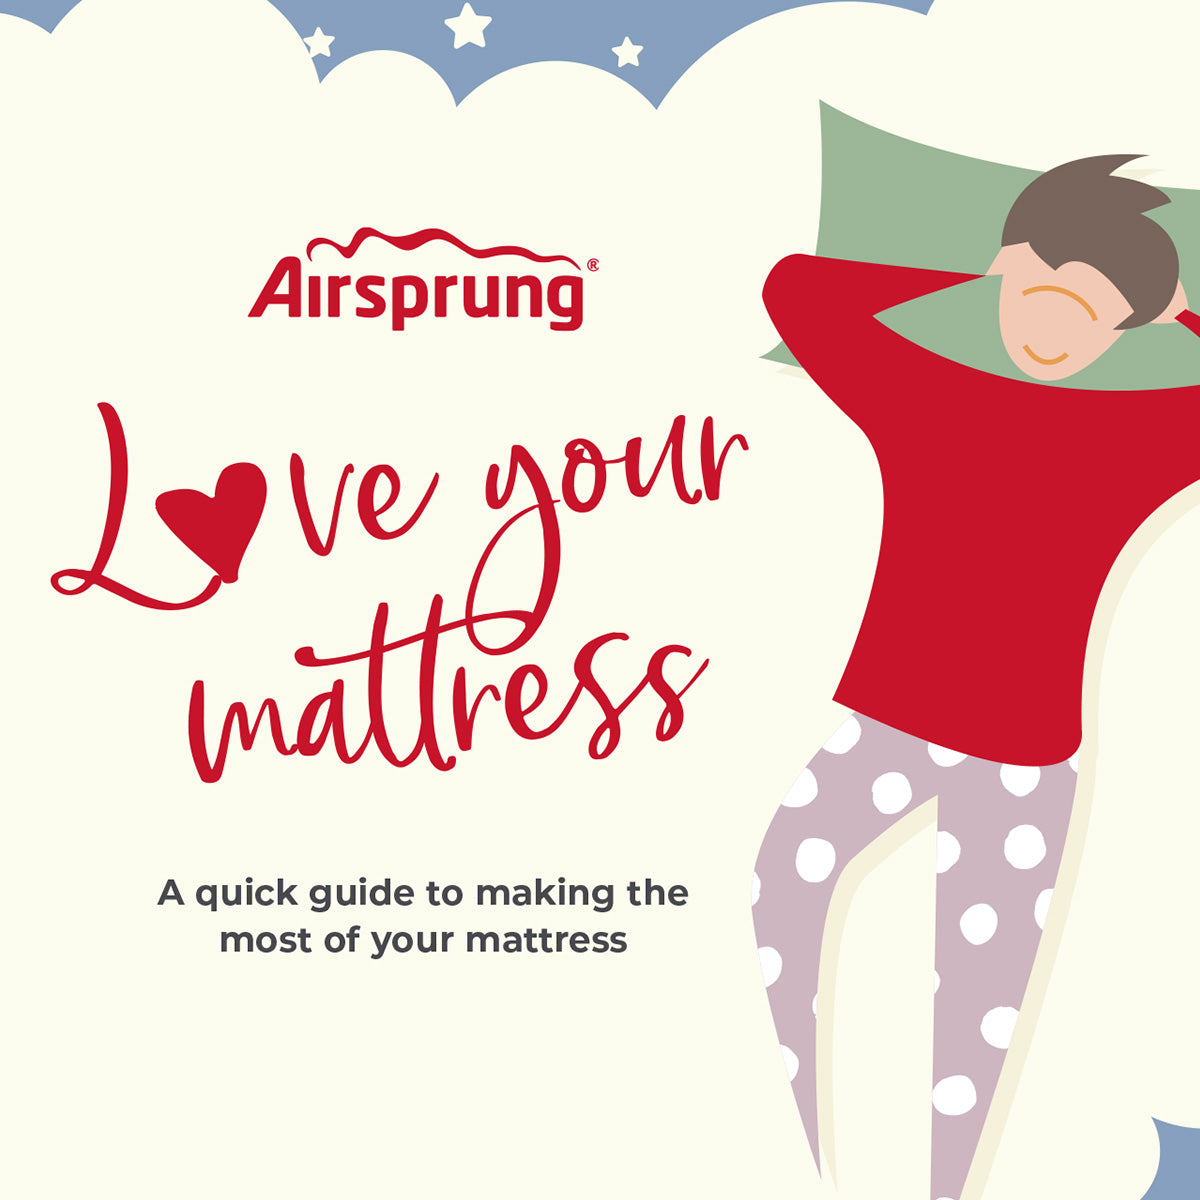 Airsprung Mattress Care Guide